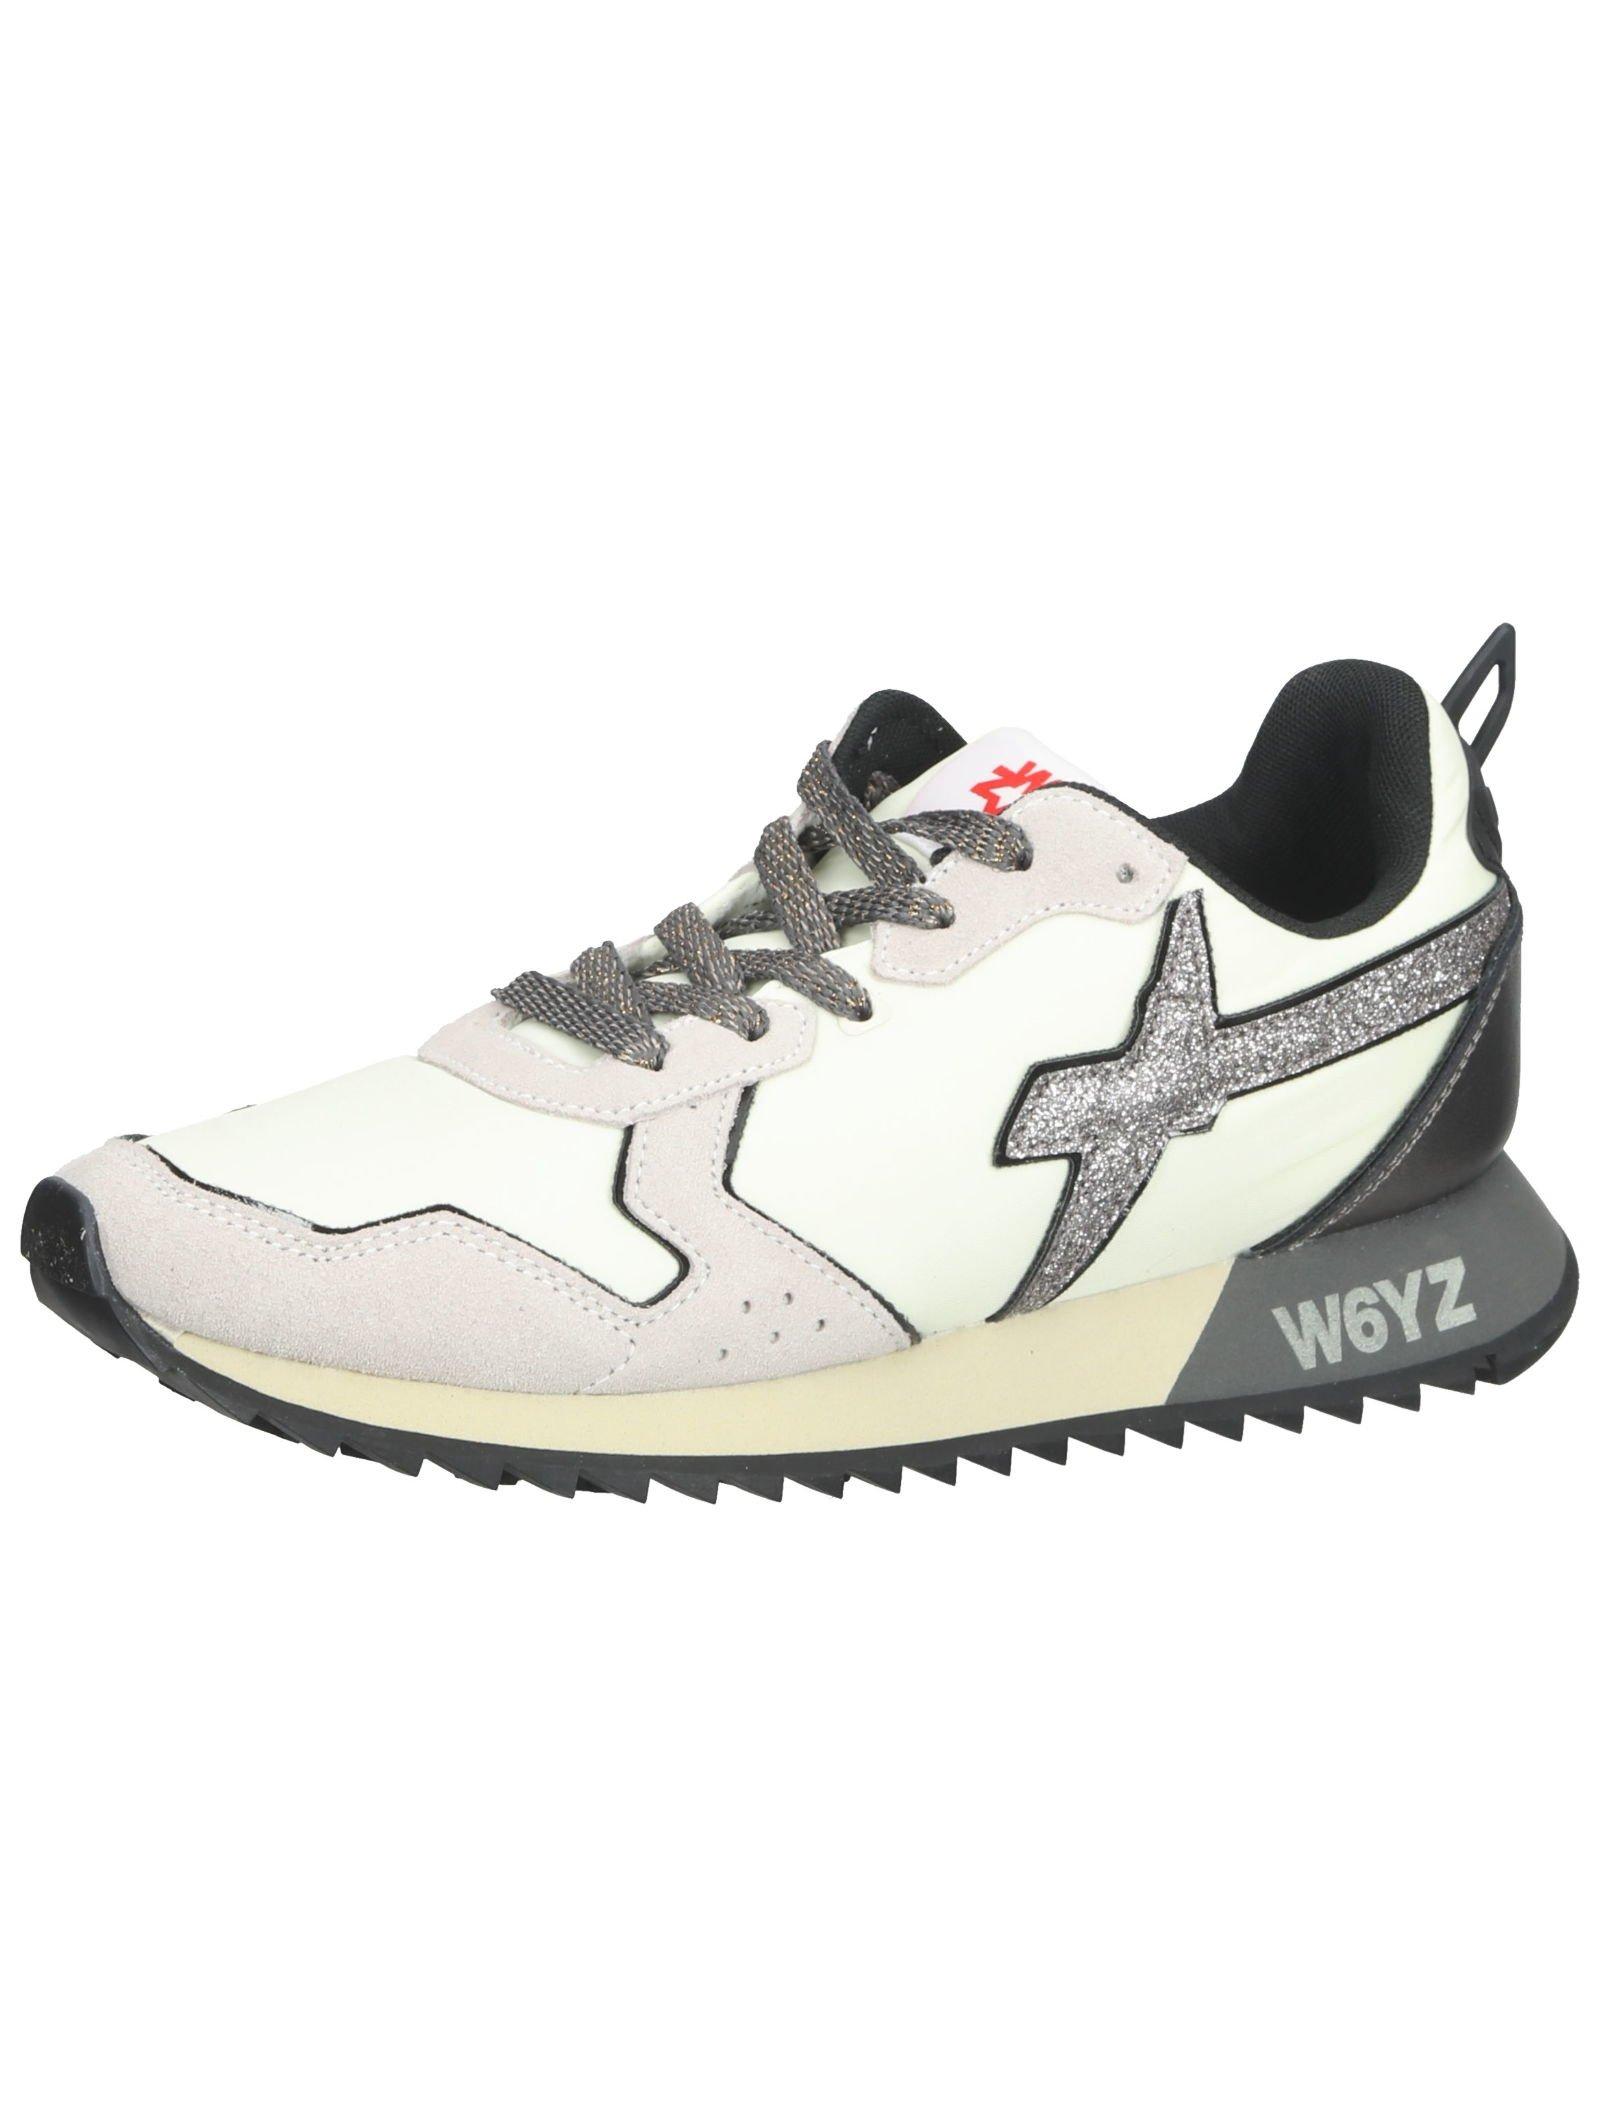 Image of W6YZ Sneaker 201356301 - 42